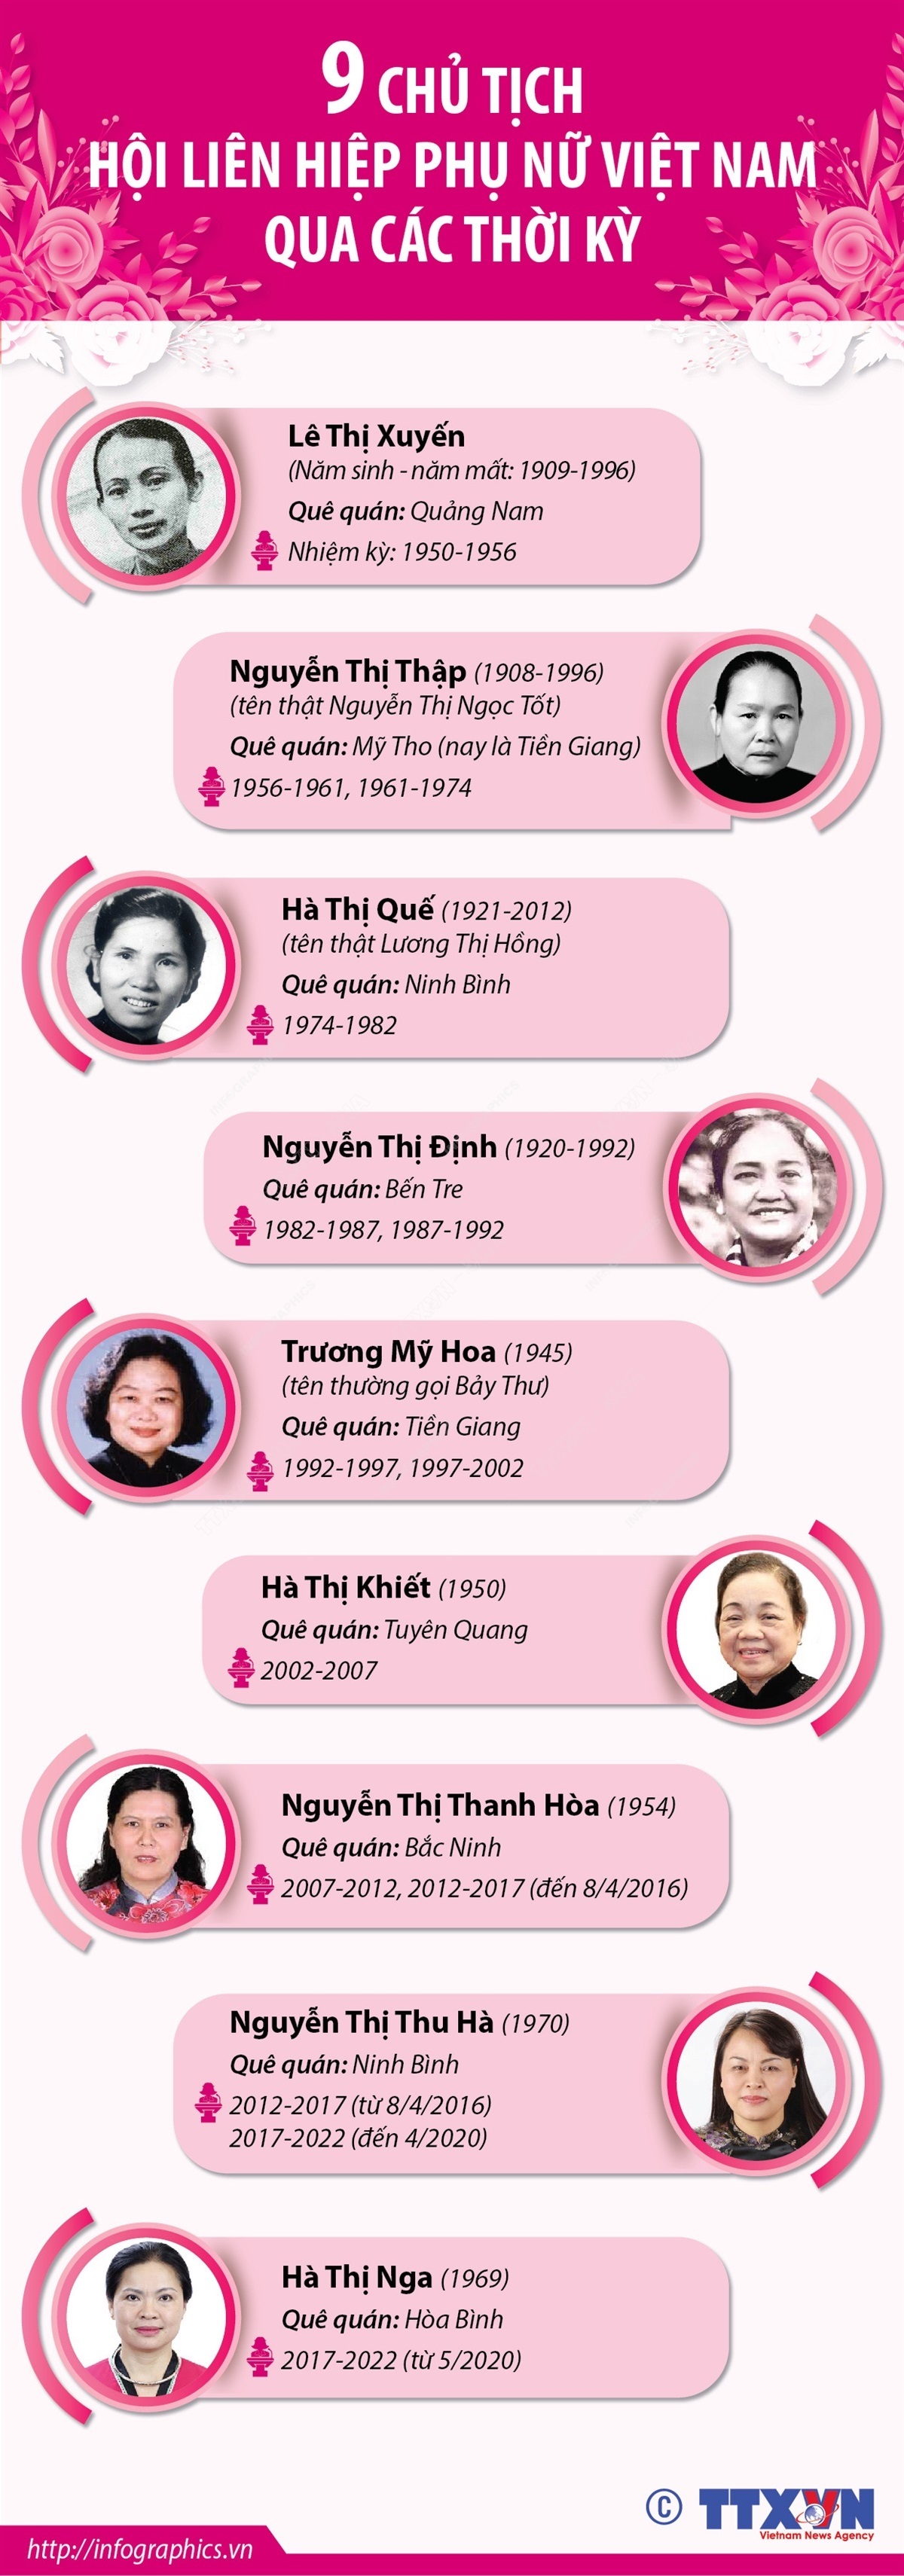 Chủ tịch Hội Liên hiệp Phụ nữ Việt Nam: Chủ tịch Hội Liên hiệp Phụ nữ Việt Nam - một trong những vị lãnh đạo nữ vĩ đại nhất của nước ta, đã đưa sự nghiệp bình đẳng giới phát triển mạnh mẽ hơn. Với sự cam kết và những đóng góp đặc biệt của mình, chị đã đạt được những kết quả to lớn trong việc nâng cao vị trí của phụ nữ trong xã hội và đóng góp cho sự phát triển của đất nước. Hãy cùng chúng tôi chiêm ngưỡng những hình ảnh tôn vinh về Chủ tịch Hội Liên hiệp Phụ nữ Việt Nam.